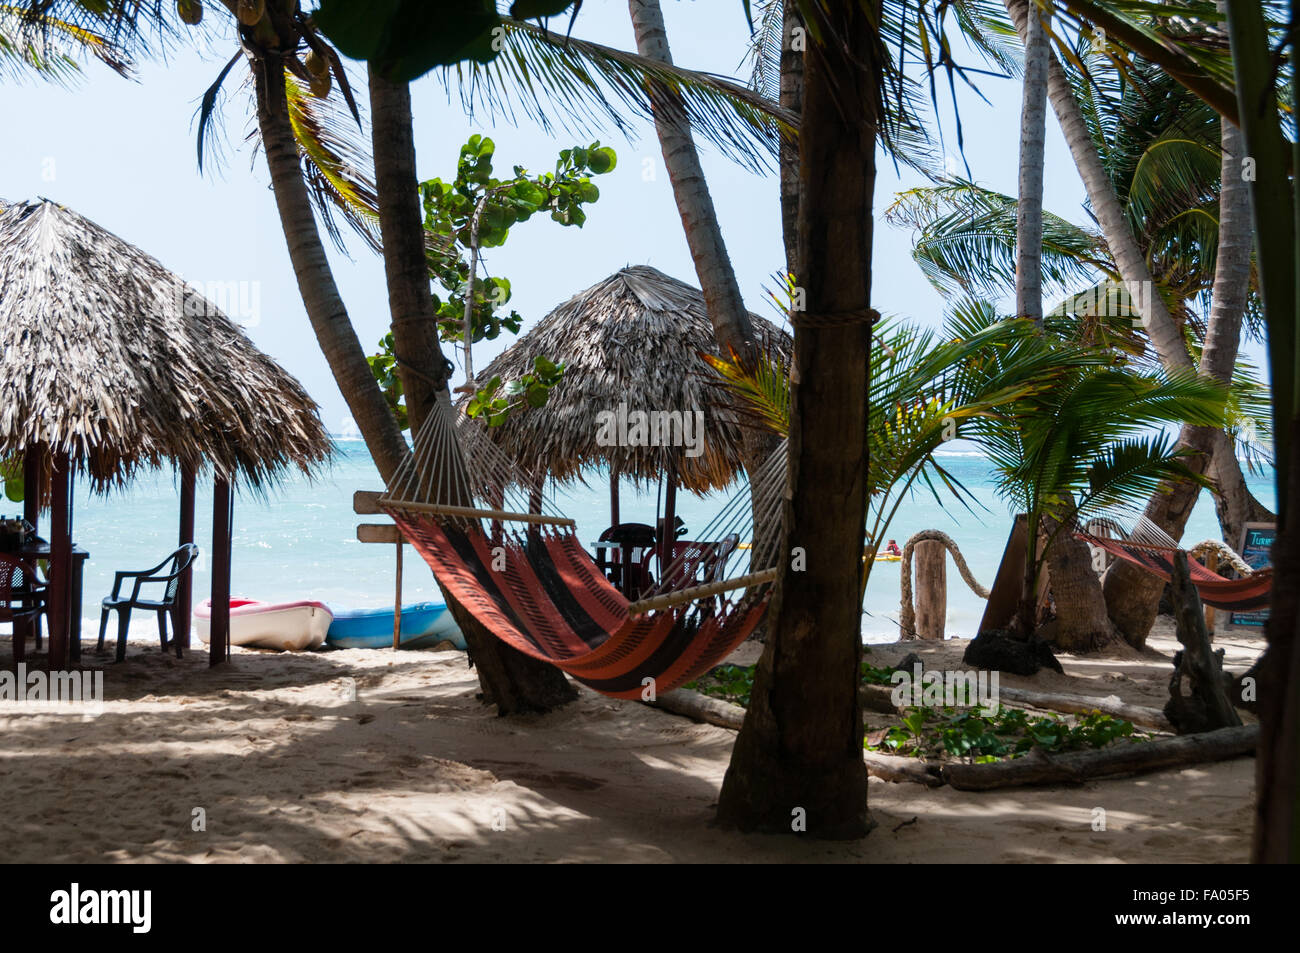 Deux abris avec Tables Chaises et hamac sur la plage de sable blanc en face de la mer des Caraïbes Banque D'Images